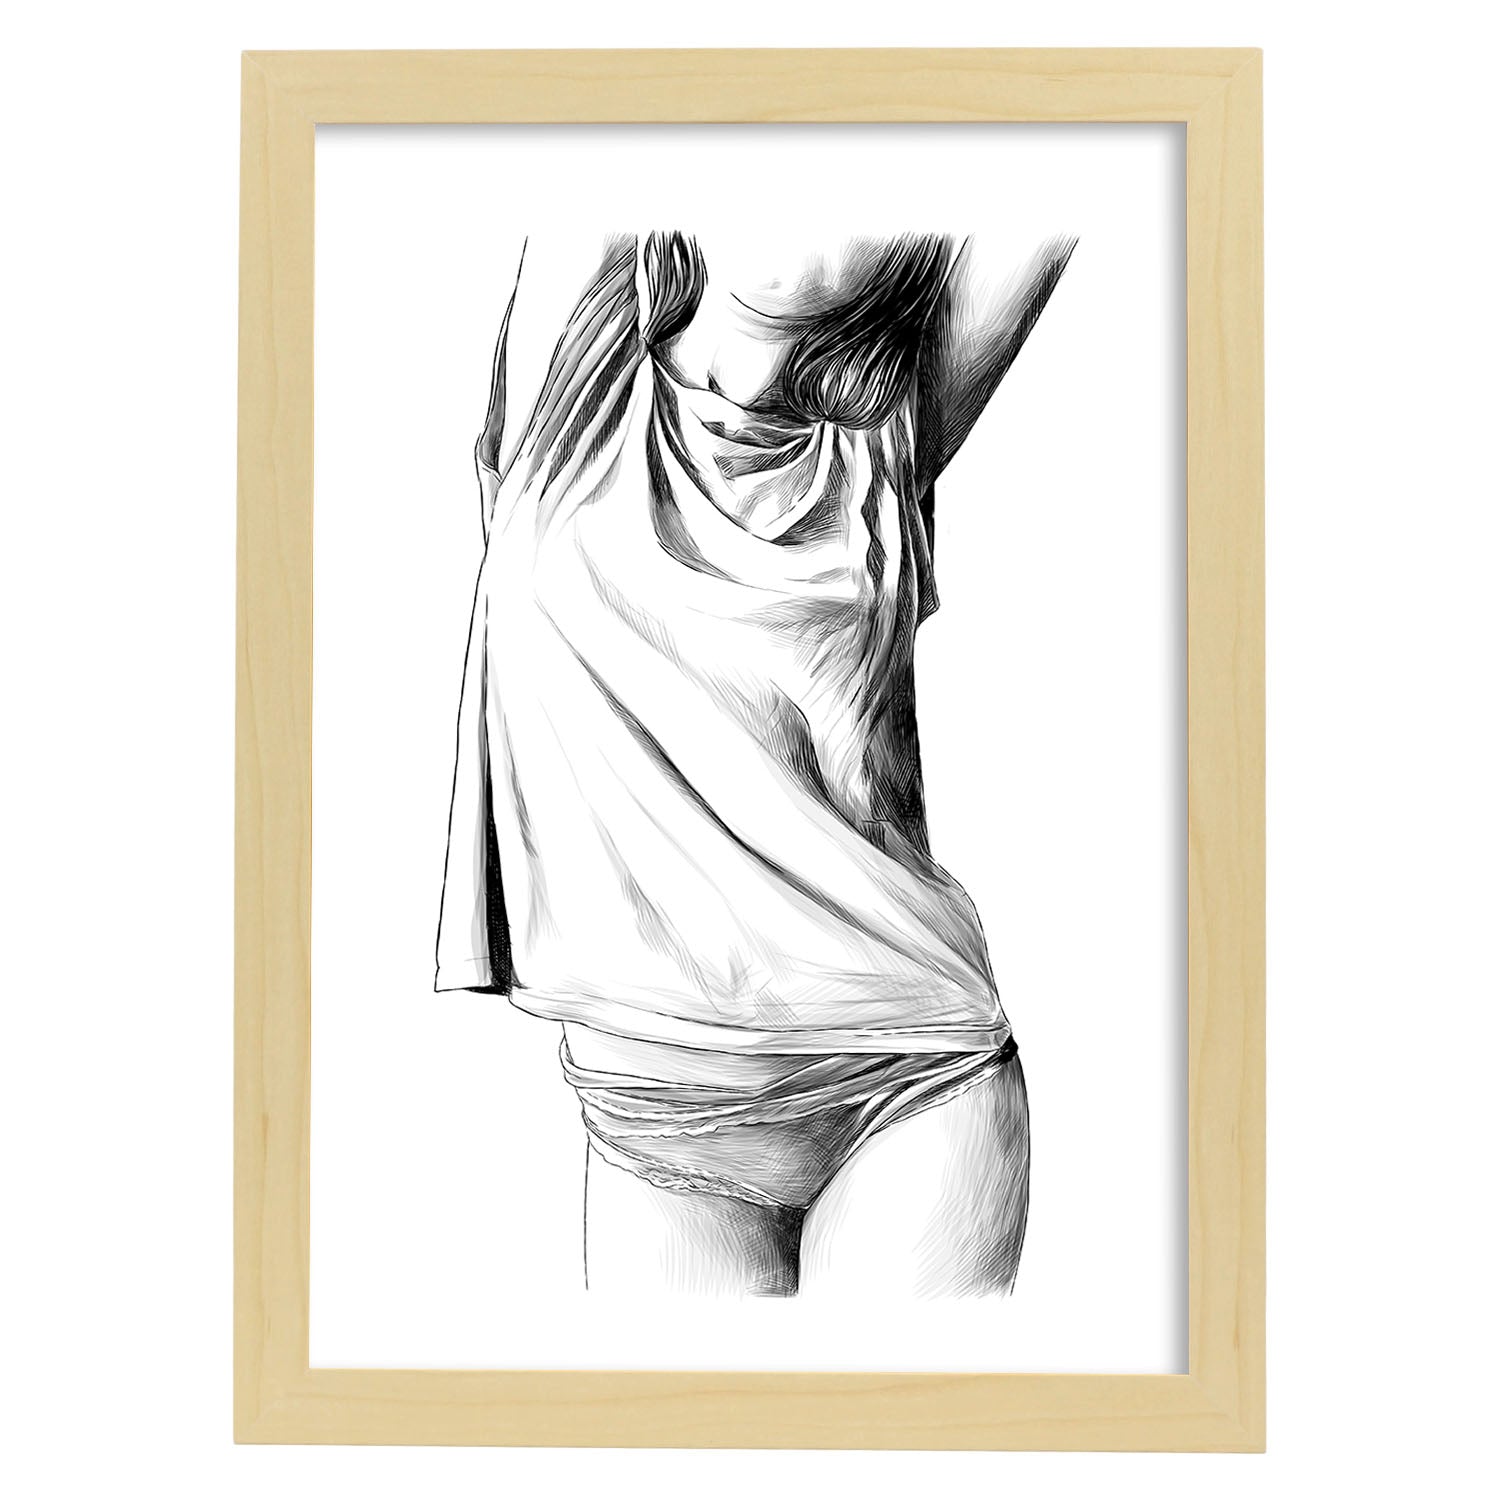 Posters eróticos. Lámina Frontal 1 dibujada con imágenes sensuales del cuerpo femenino.-Artwork-Nacnic-A4-Marco Madera clara-Nacnic Estudio SL